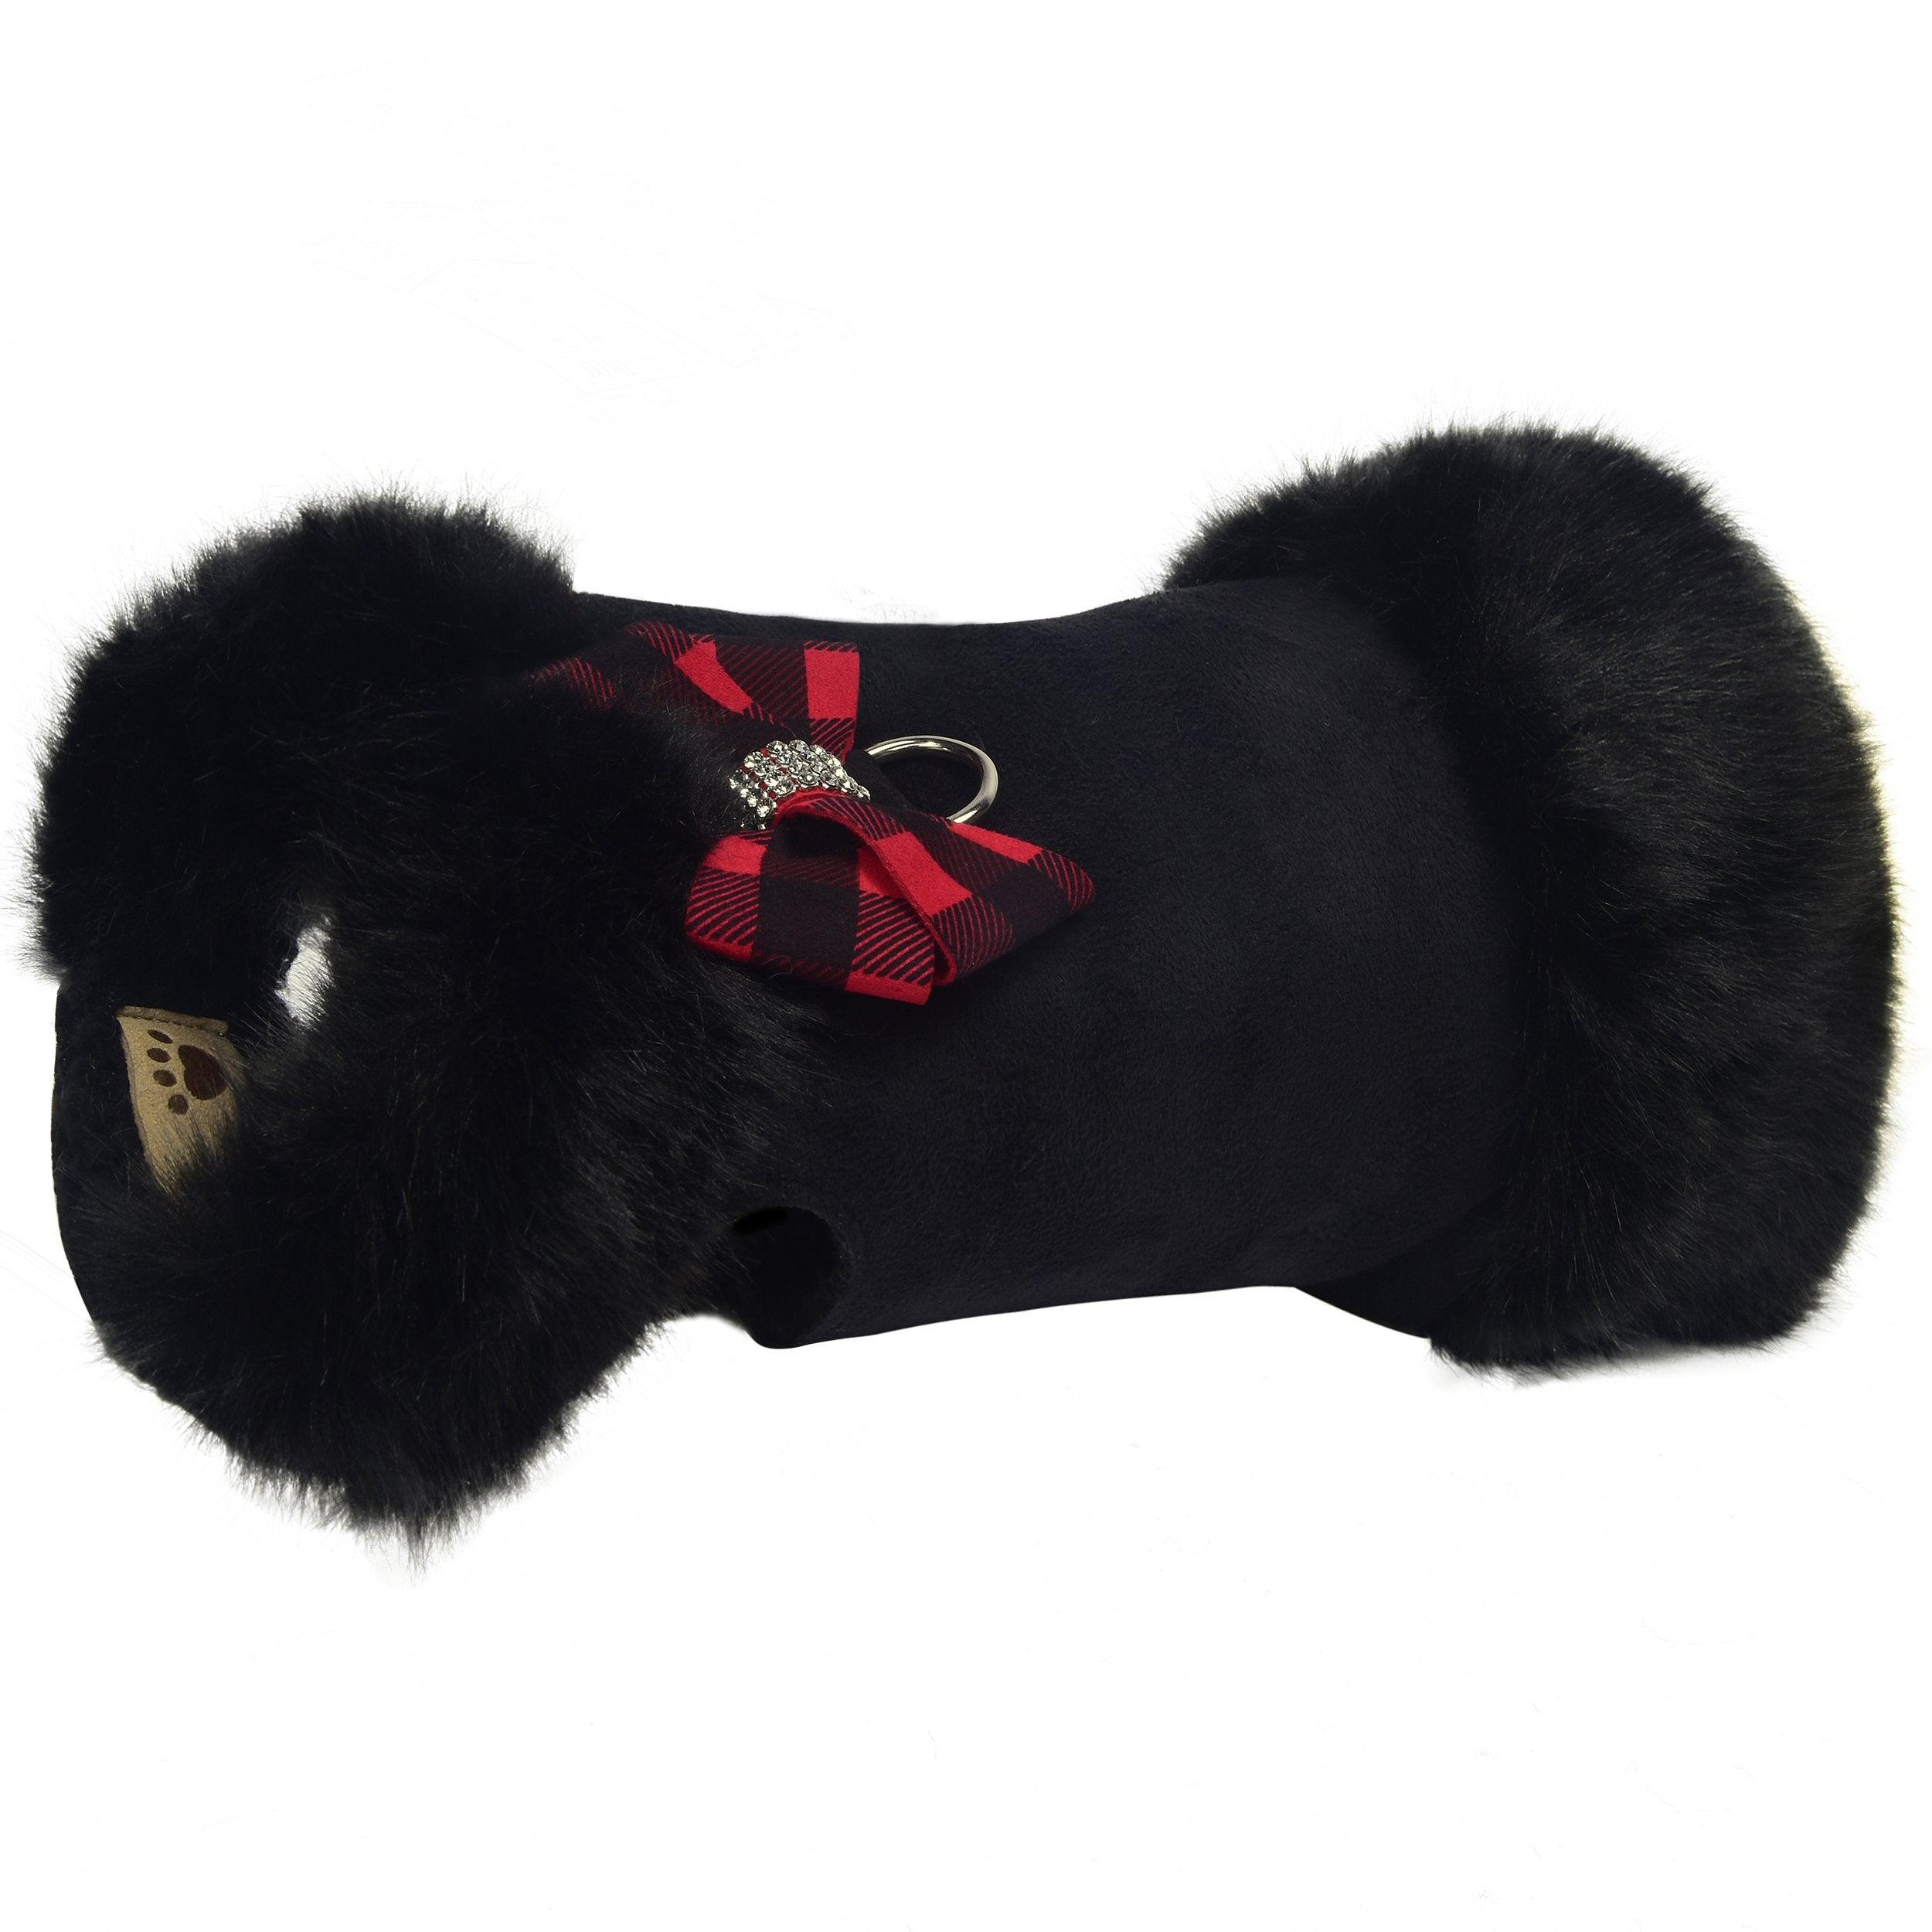 Red Gingham Nouveau Bow Black Fox Fur Coat - Rocky & Maggie's Pet Boutique and Salon